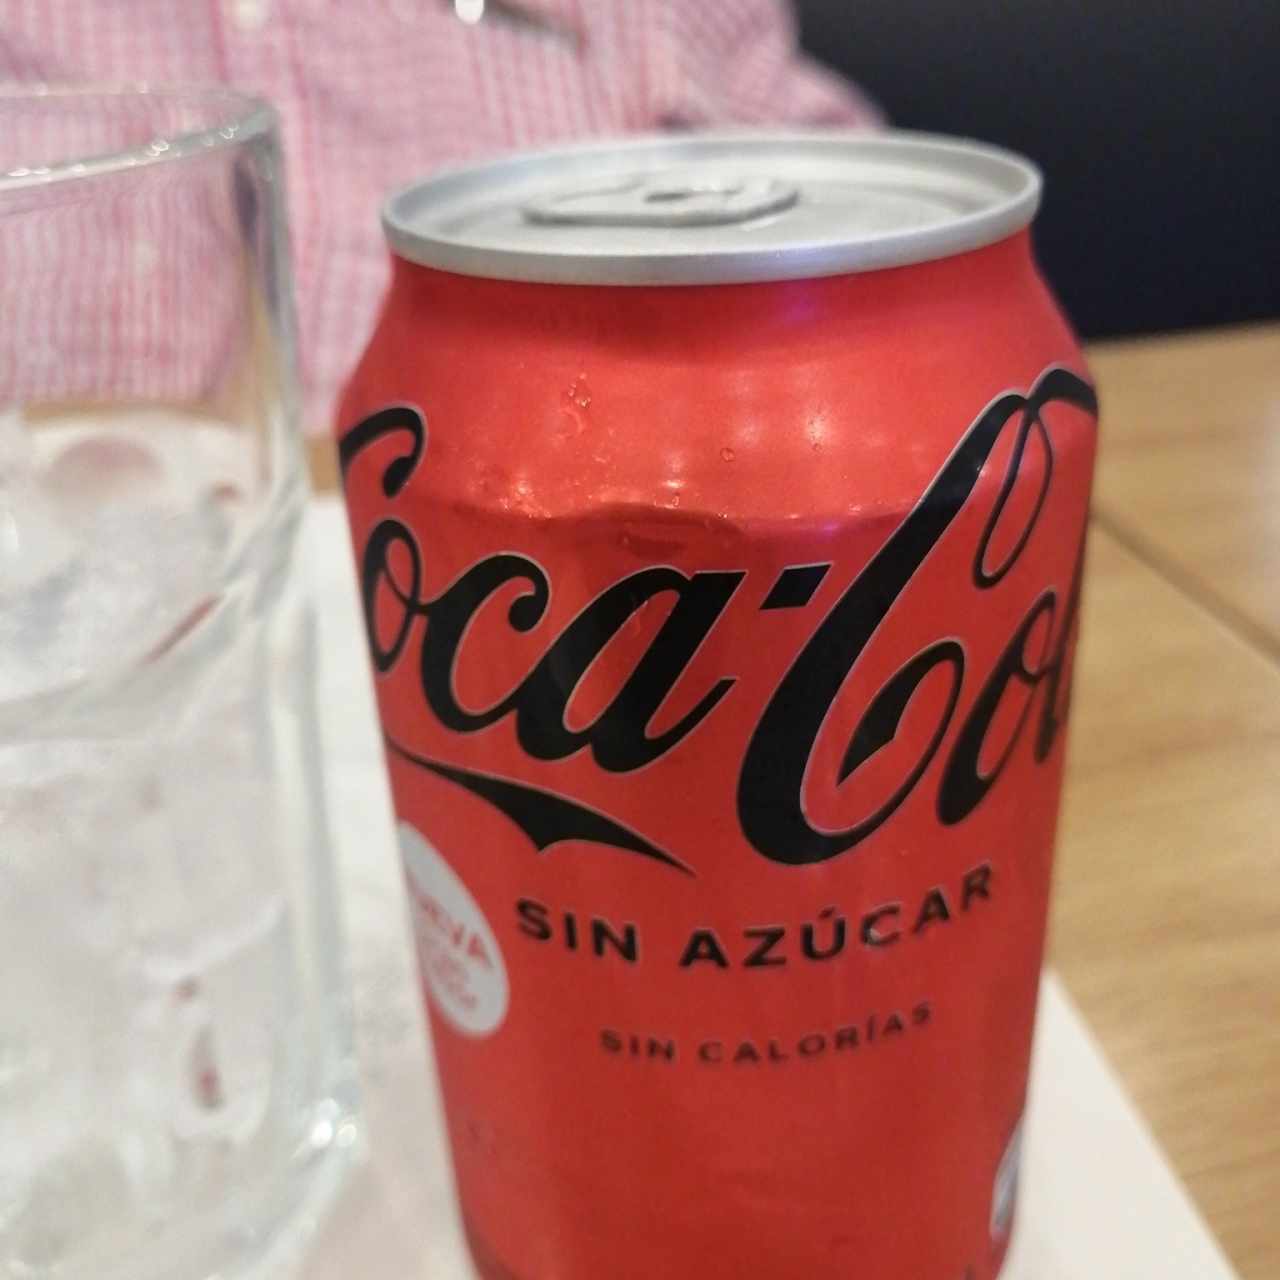 Coca cola sin azúcar